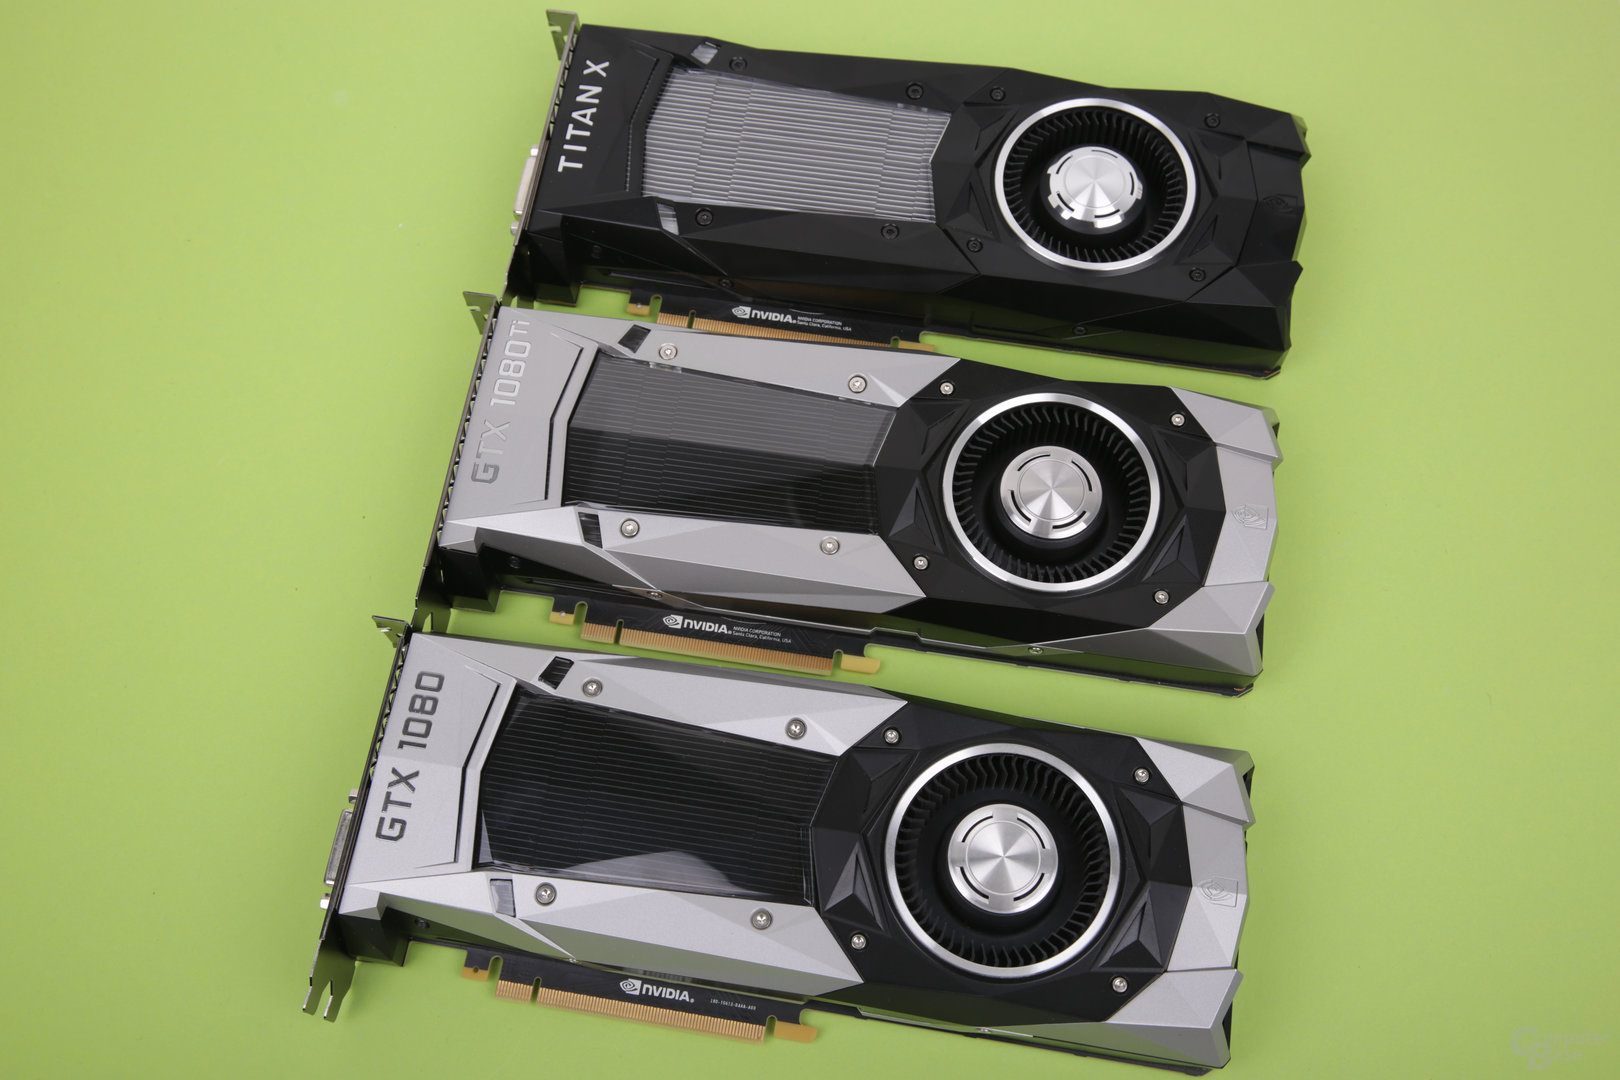 GeForce GTX 1080, GTX 1080 Ti und Titan X im Vergleich